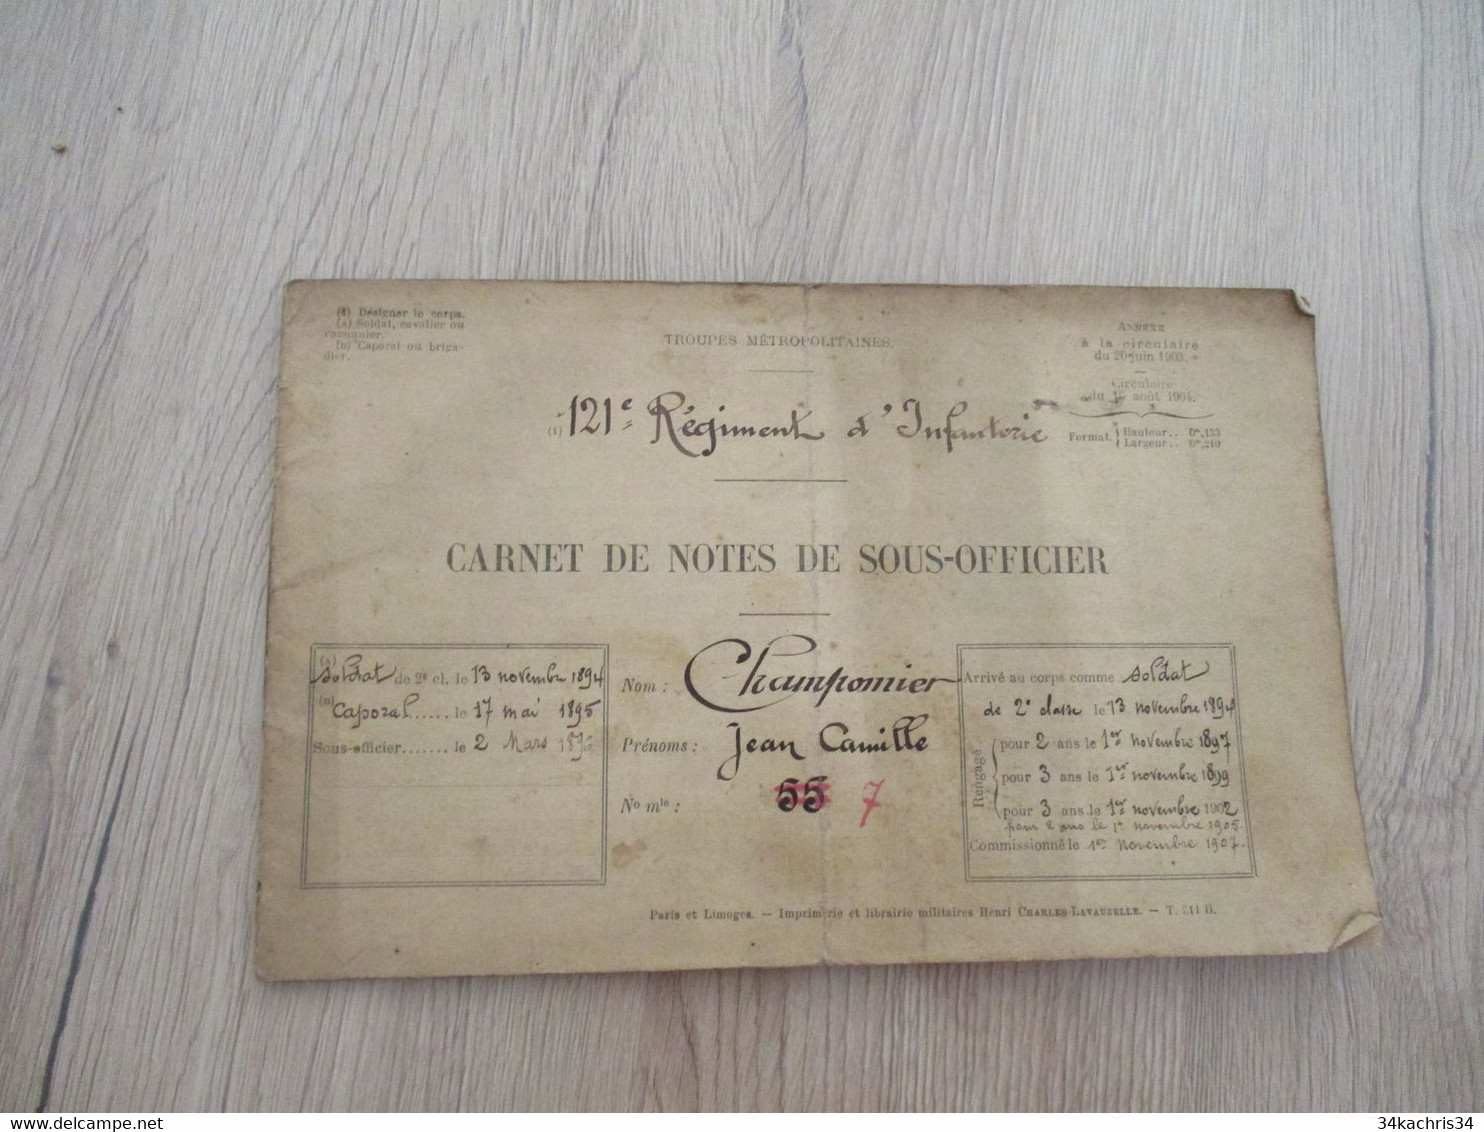 Rare 121 ème Régiment Infanterie Avec Photo Champonnier Carnet De Notes 12 P Manuscrites De Commentaires Su Officier.... - Documents